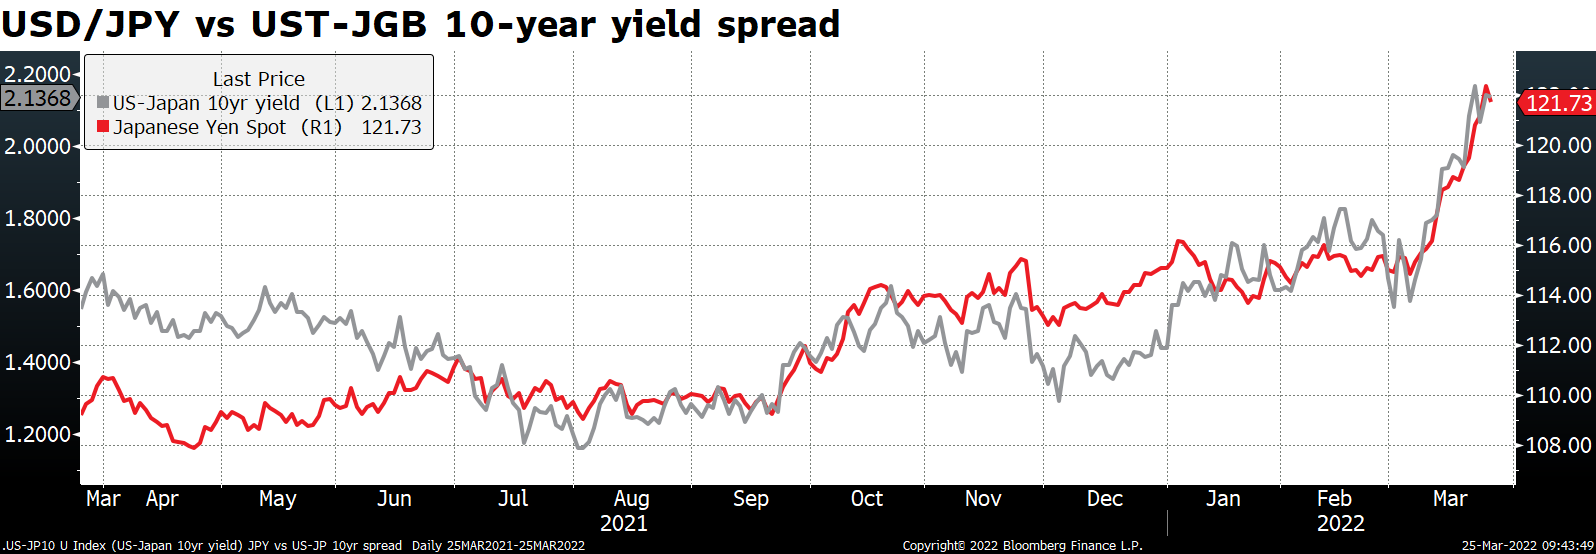 USD/JPY vs UST-JGB 10-year yield spread